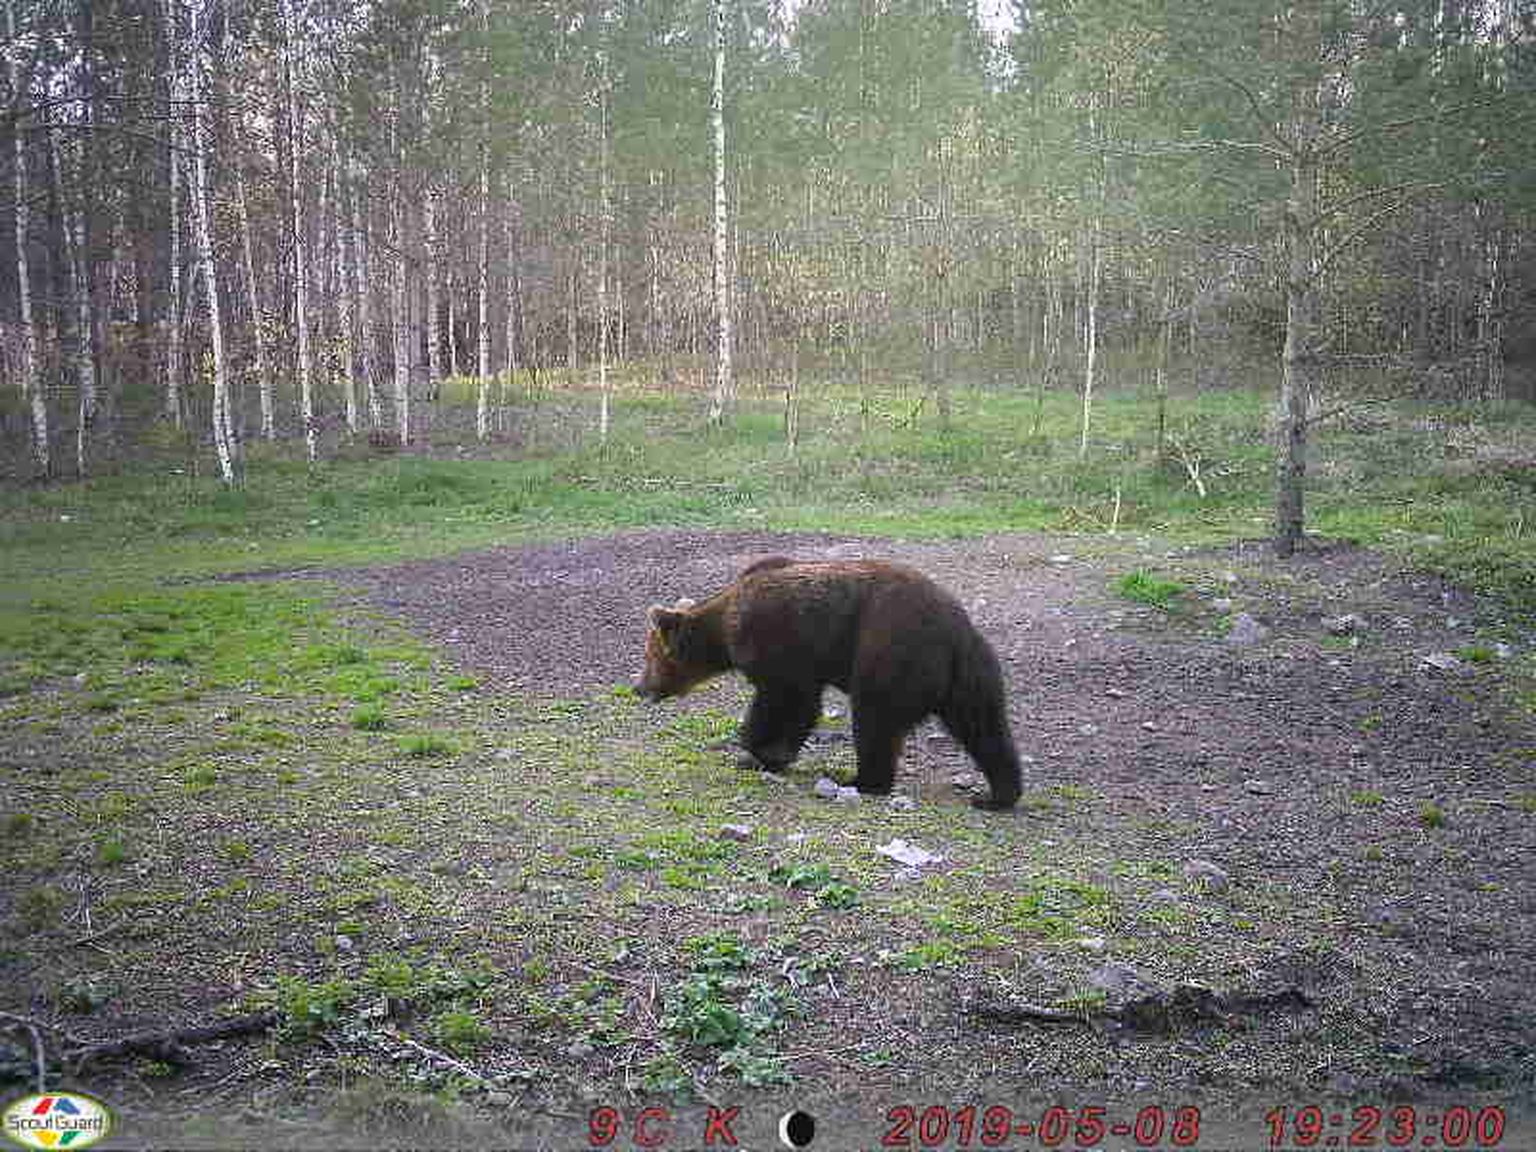 Насколько известно, вокаского медведя пока никто не сфотографировал, а этот снимок трехлетней давности сделан трассовой камерой вокаских охотников.